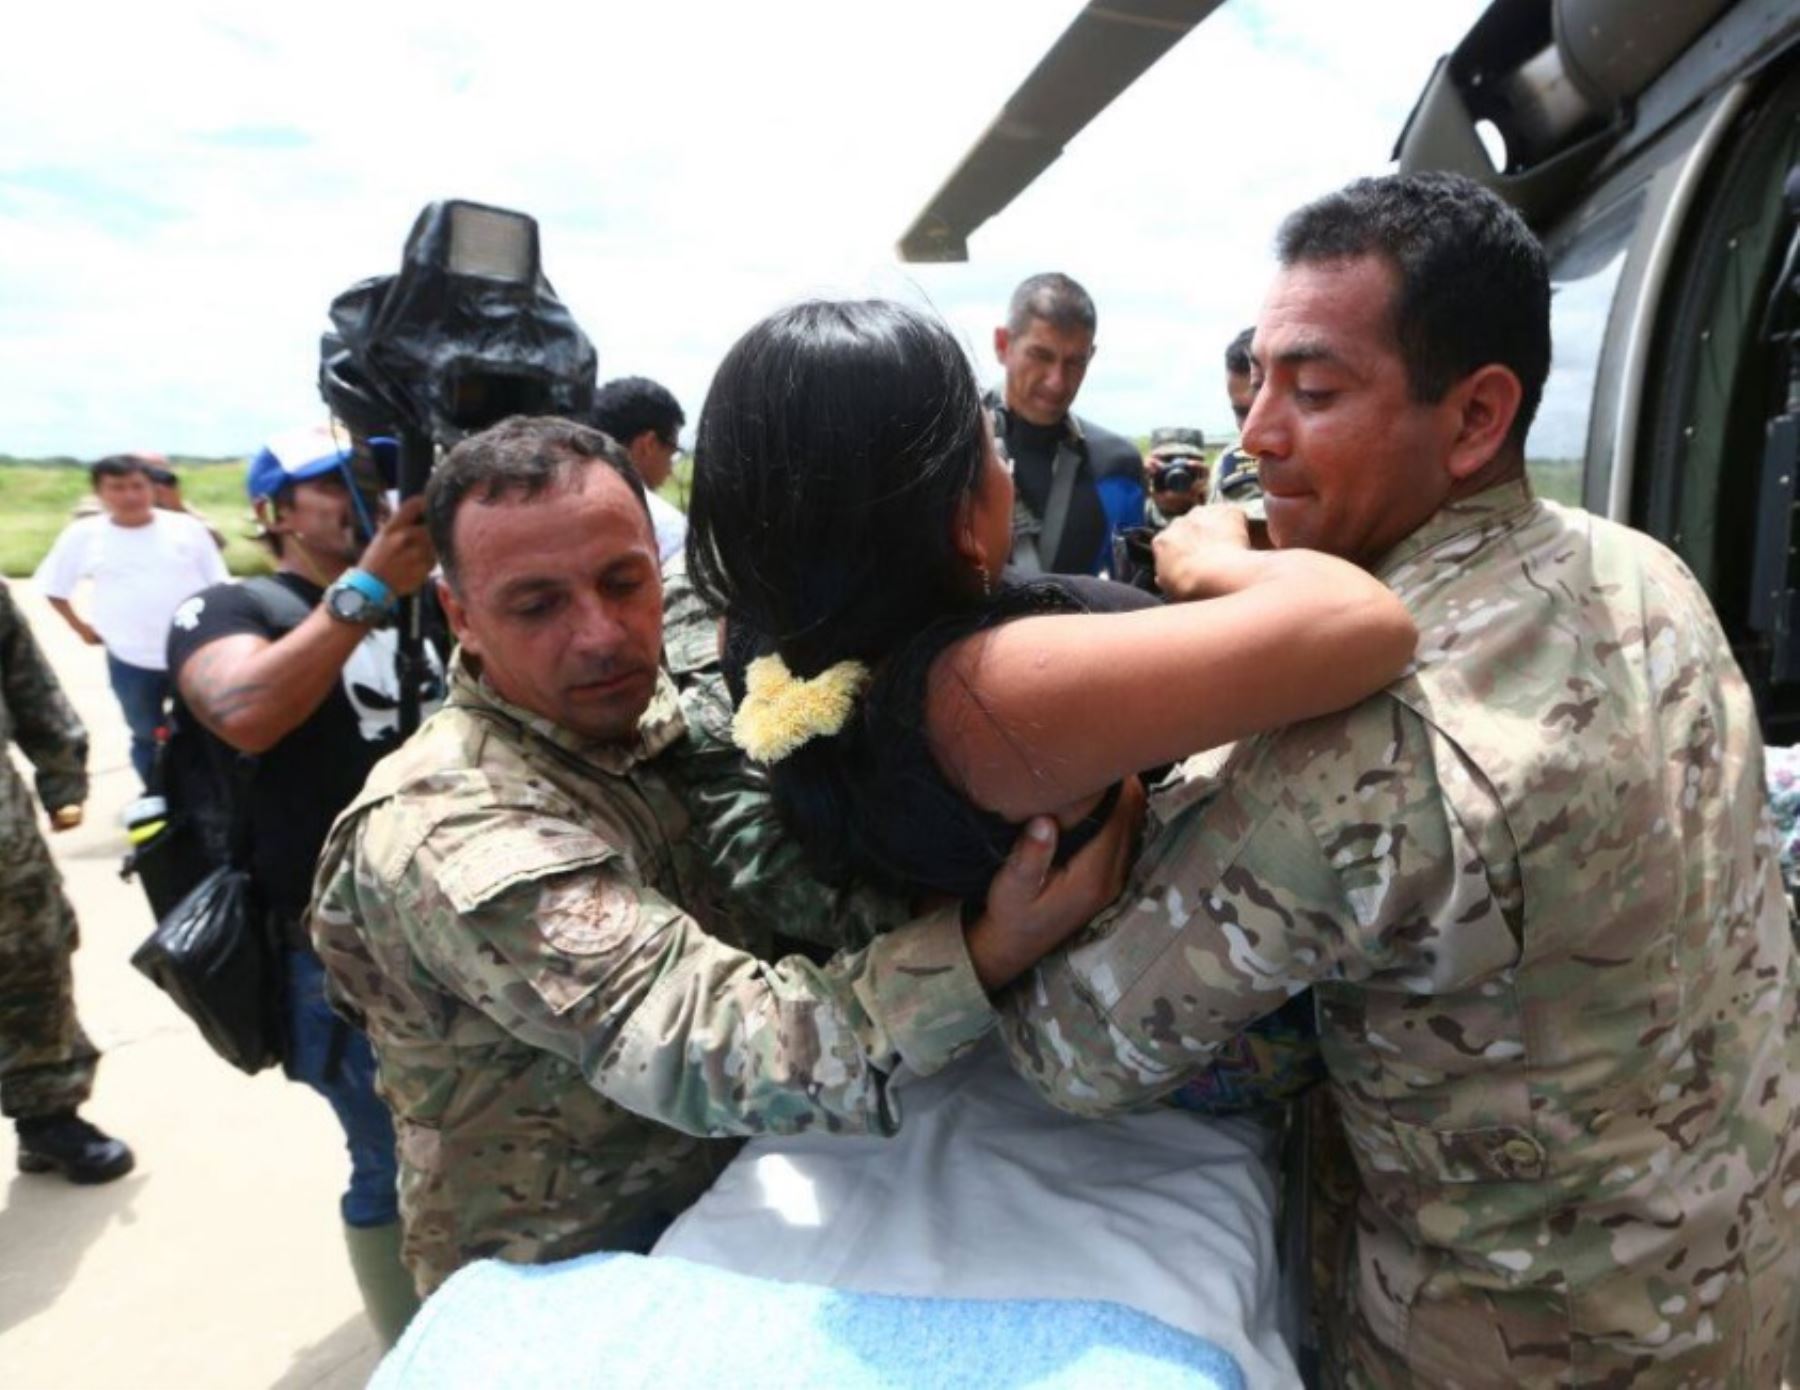 La invalorable labor humanitaria que vienen desplegando las fuerzas militares del hermano país de Colombia en apoyo al Perú en la atención de la población afectada por desastres naturales en regiones del norte, se evidencia en más de 70 horas de vuelo y 447 personas rescatadas hasta ahora.